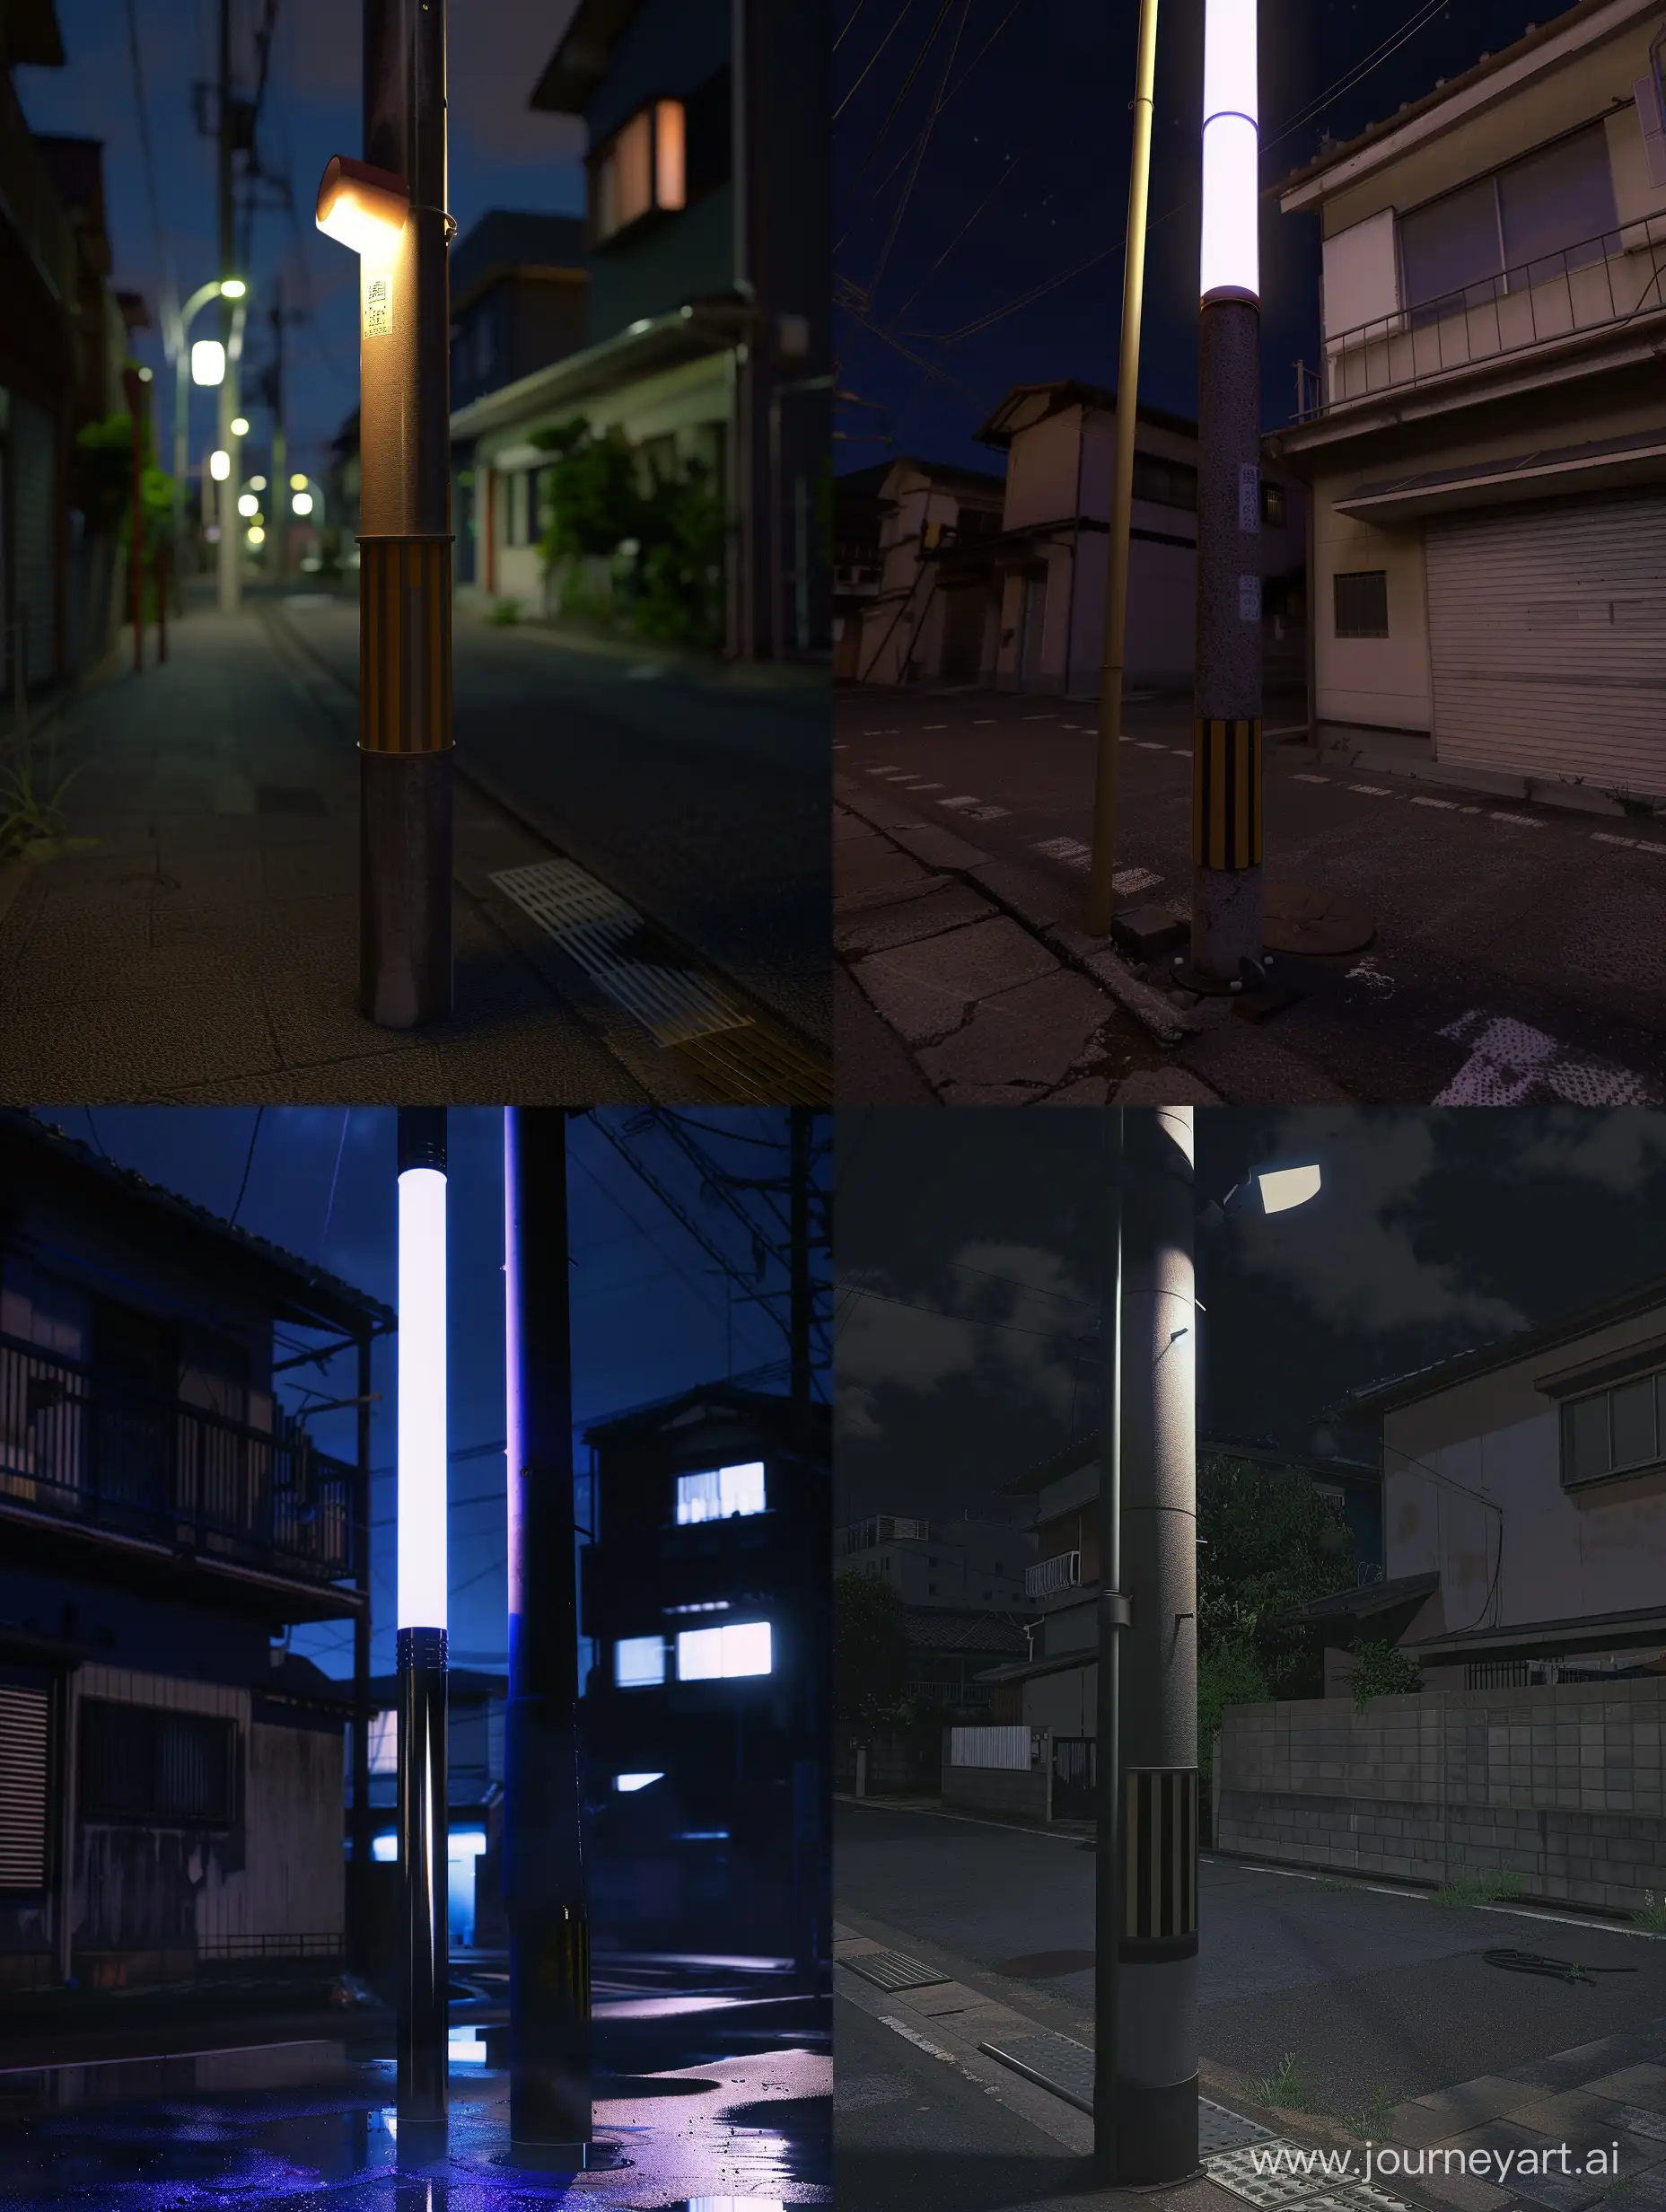 Realistic-Nighttime-Light-Pole-in-Japans-Empty-Neighborhood